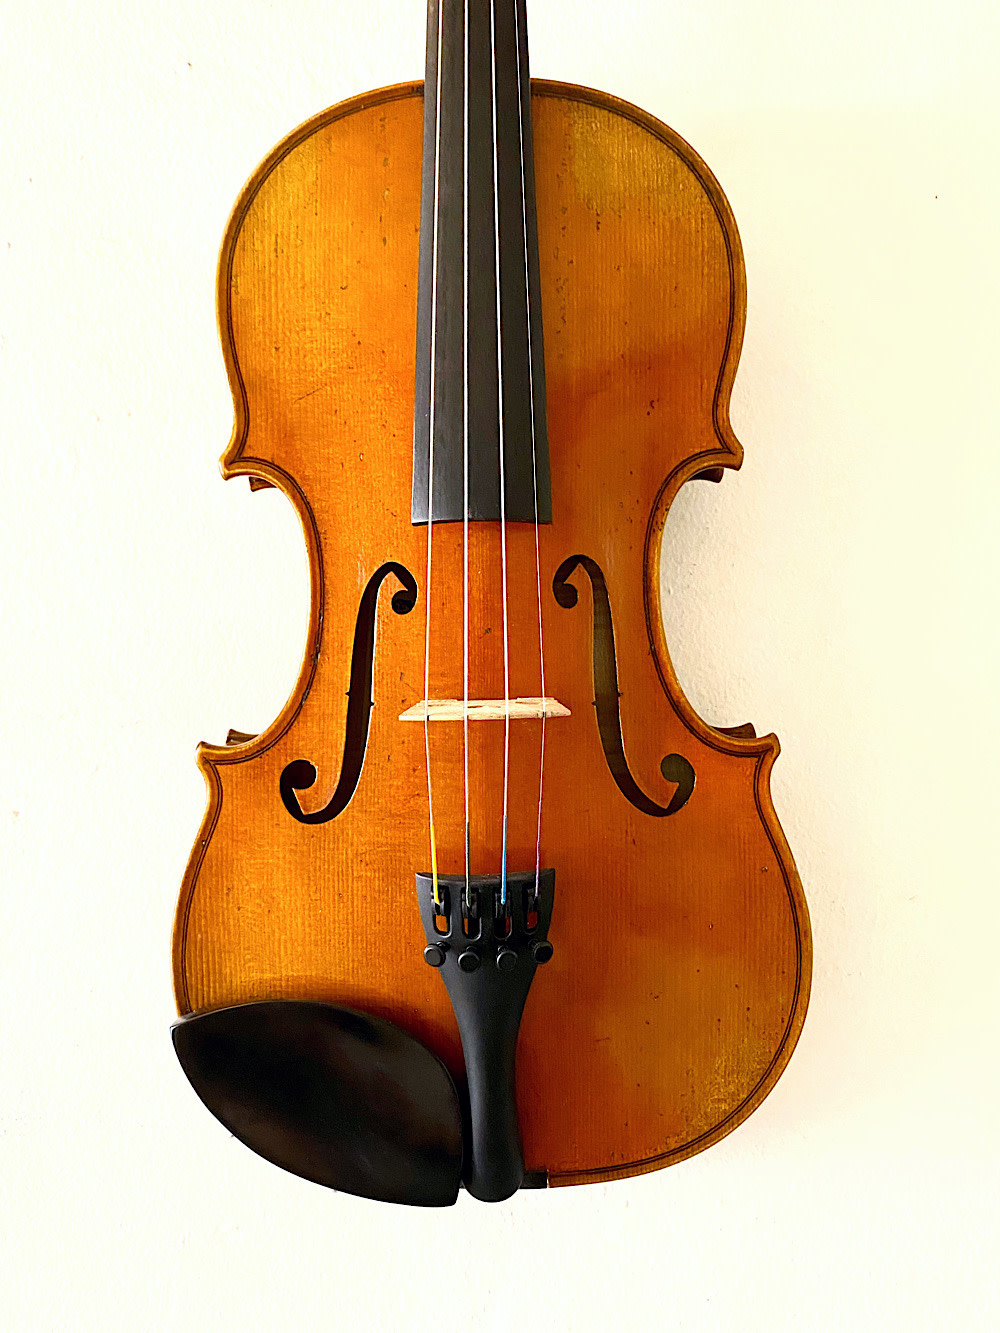 Henri Delille Pierre Marcel #6, Guarneri del Gesu 1744 model violin, Belgium, No. 130